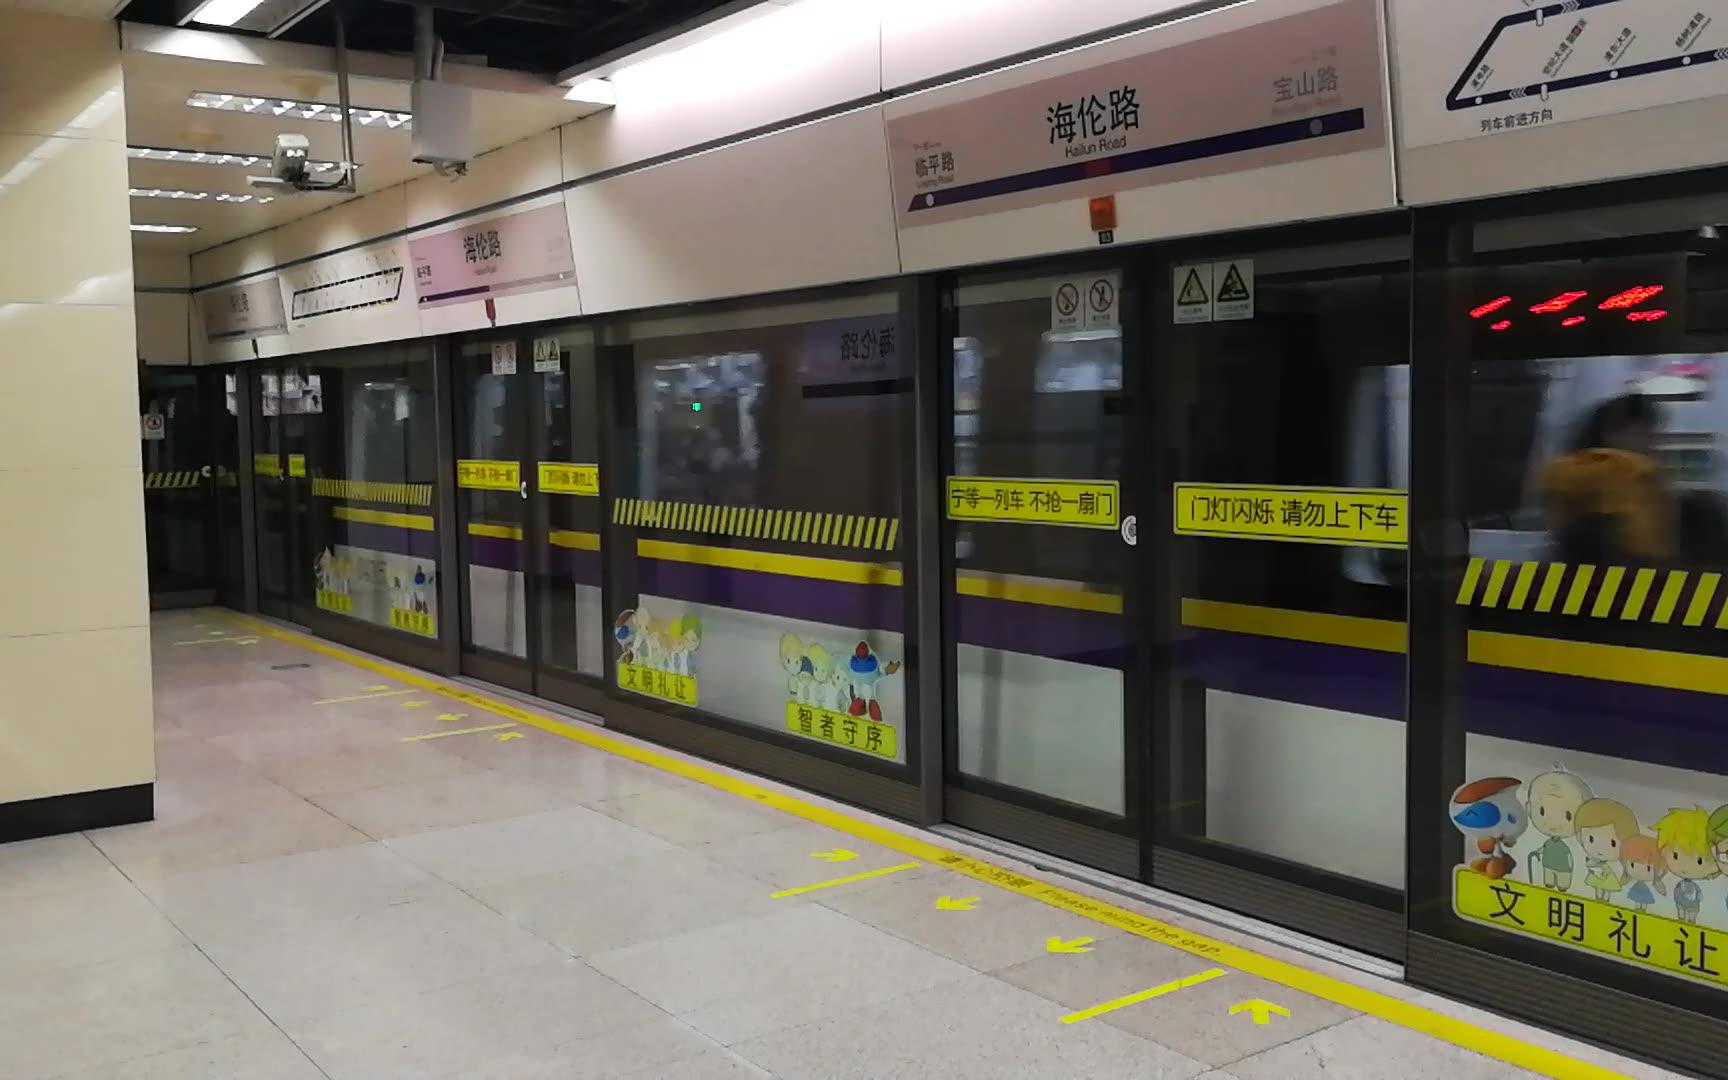 【上海地铁】上海轨道交通4号线列车离开海伦路站